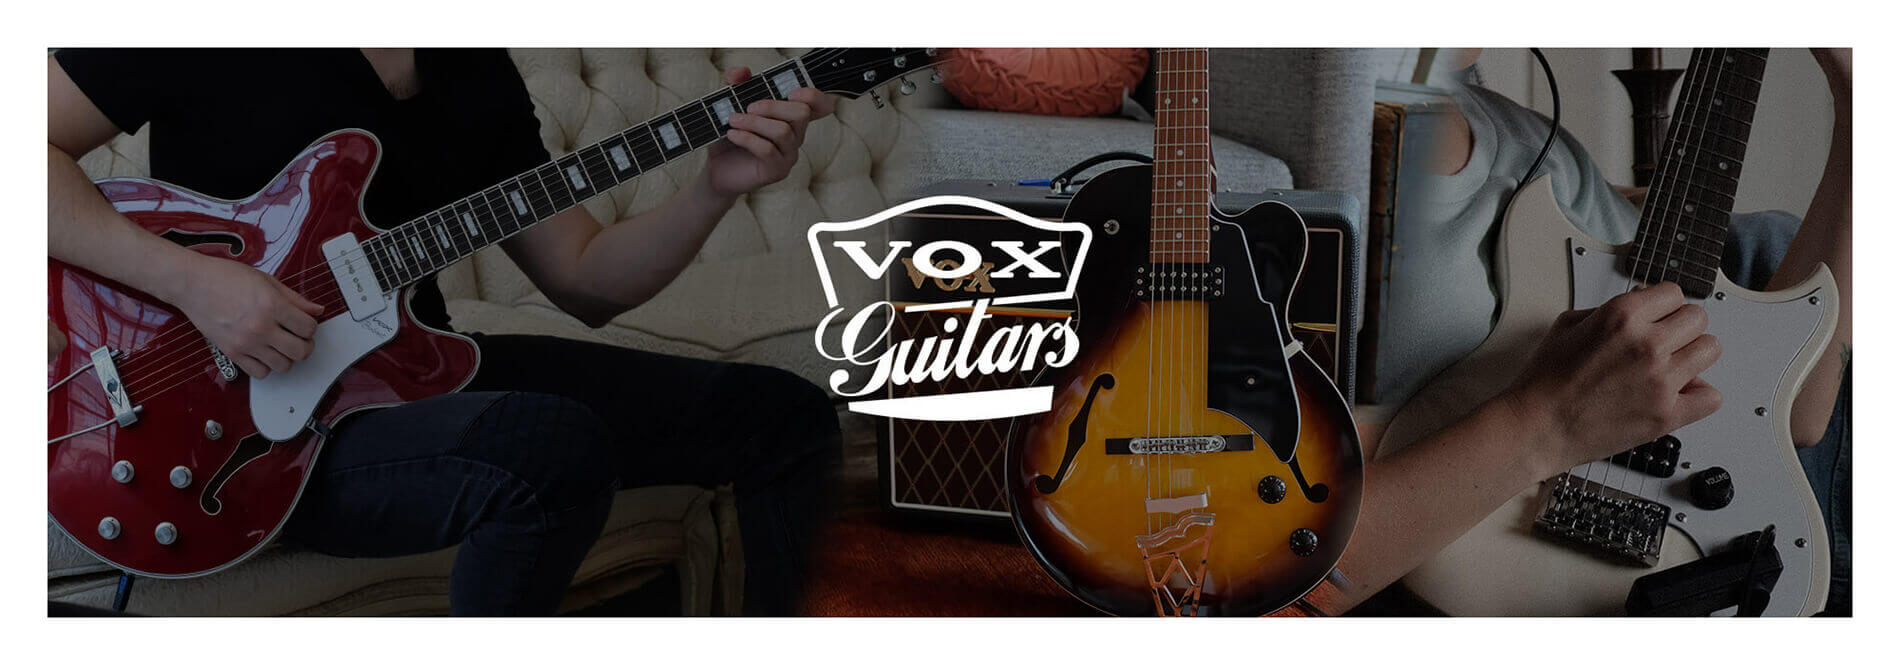 VOX Guitars